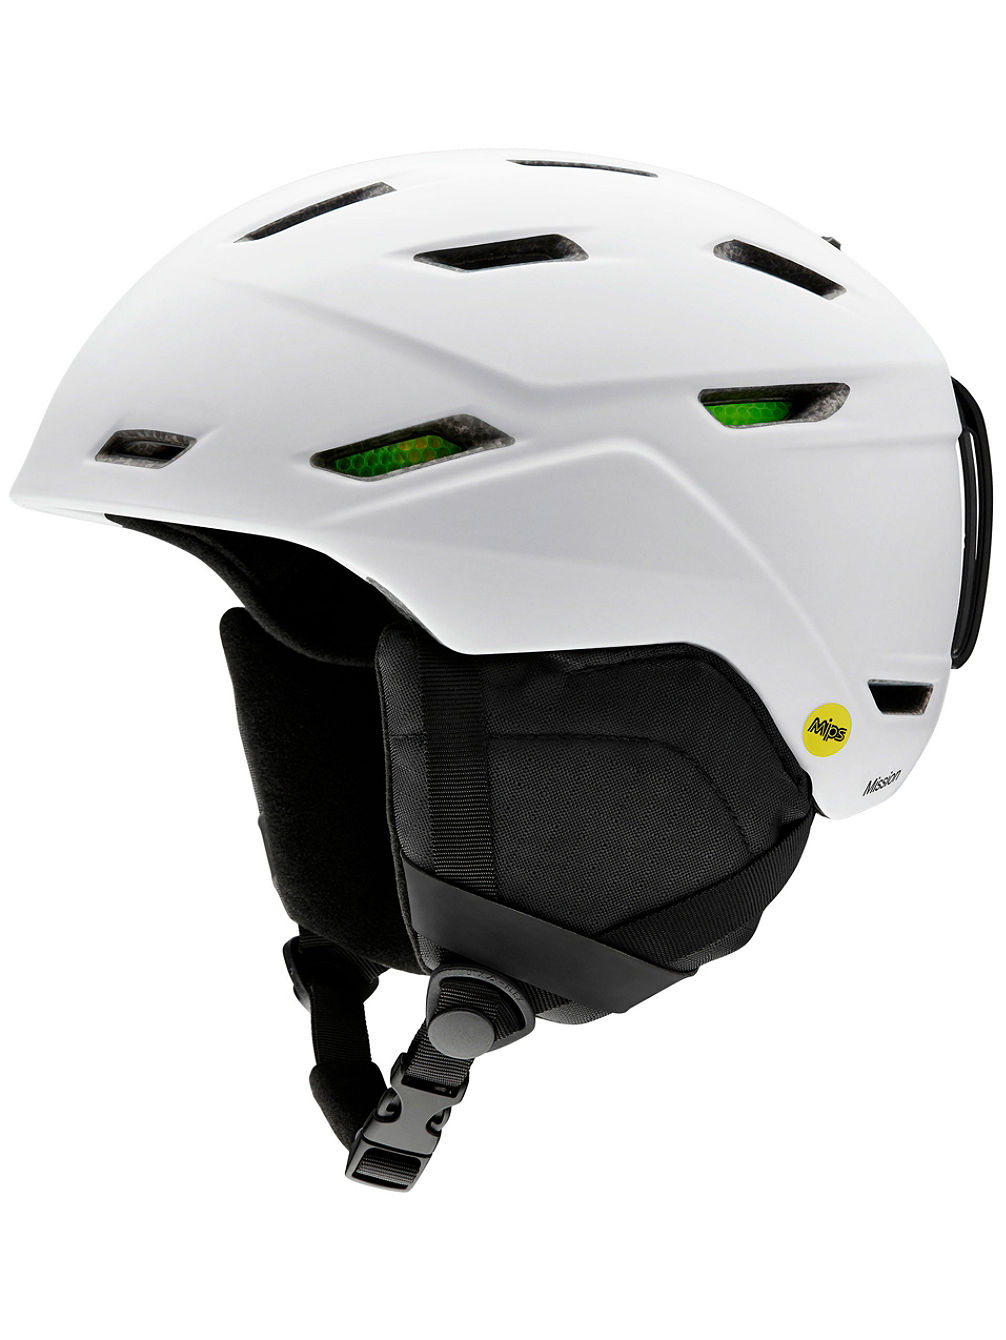 Mission MIPS Helmet